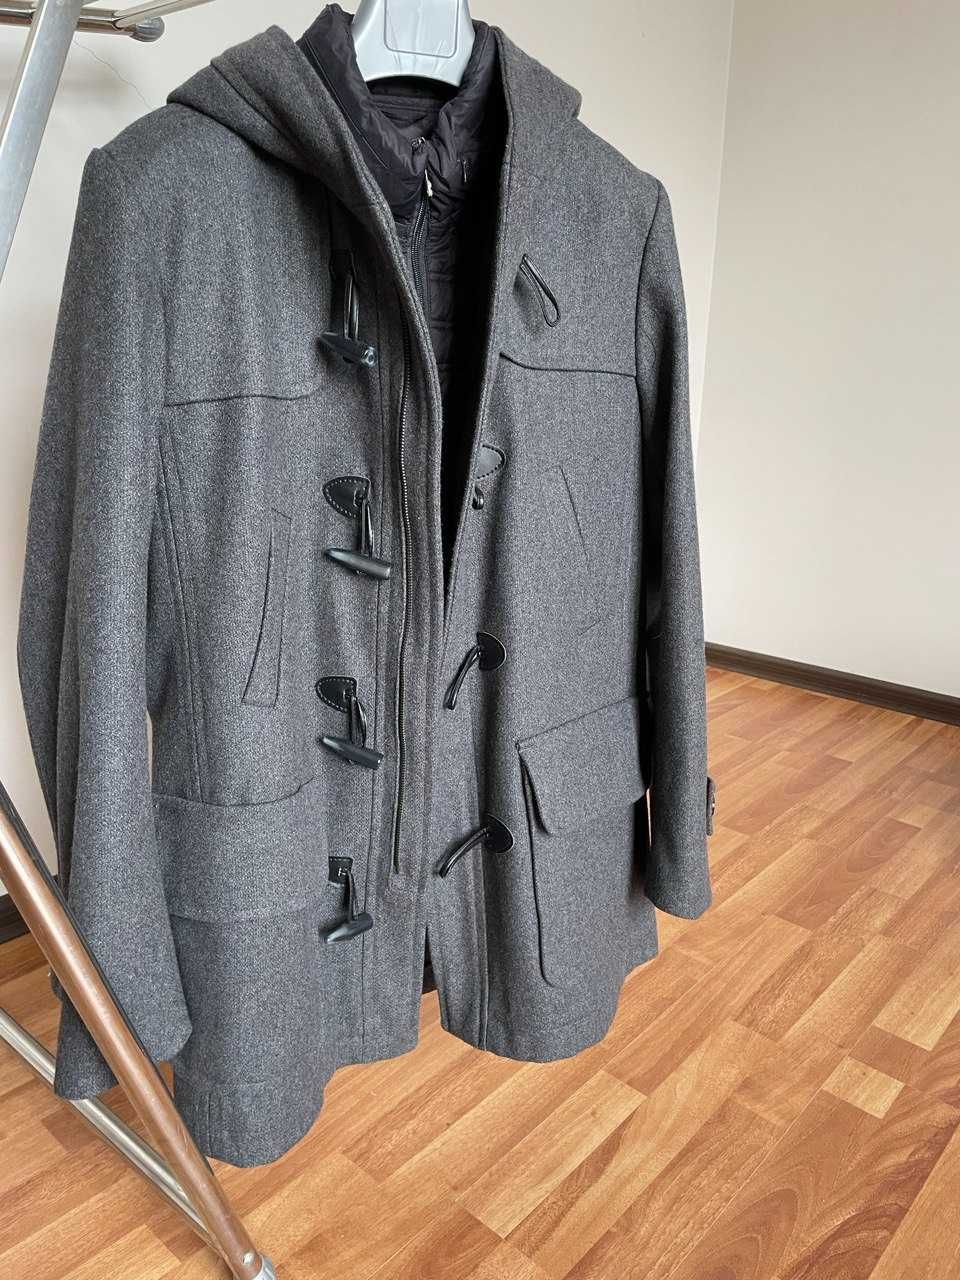 Мужская куртка, пол пальто (дафлкот)  от Bertoni, из Италии.